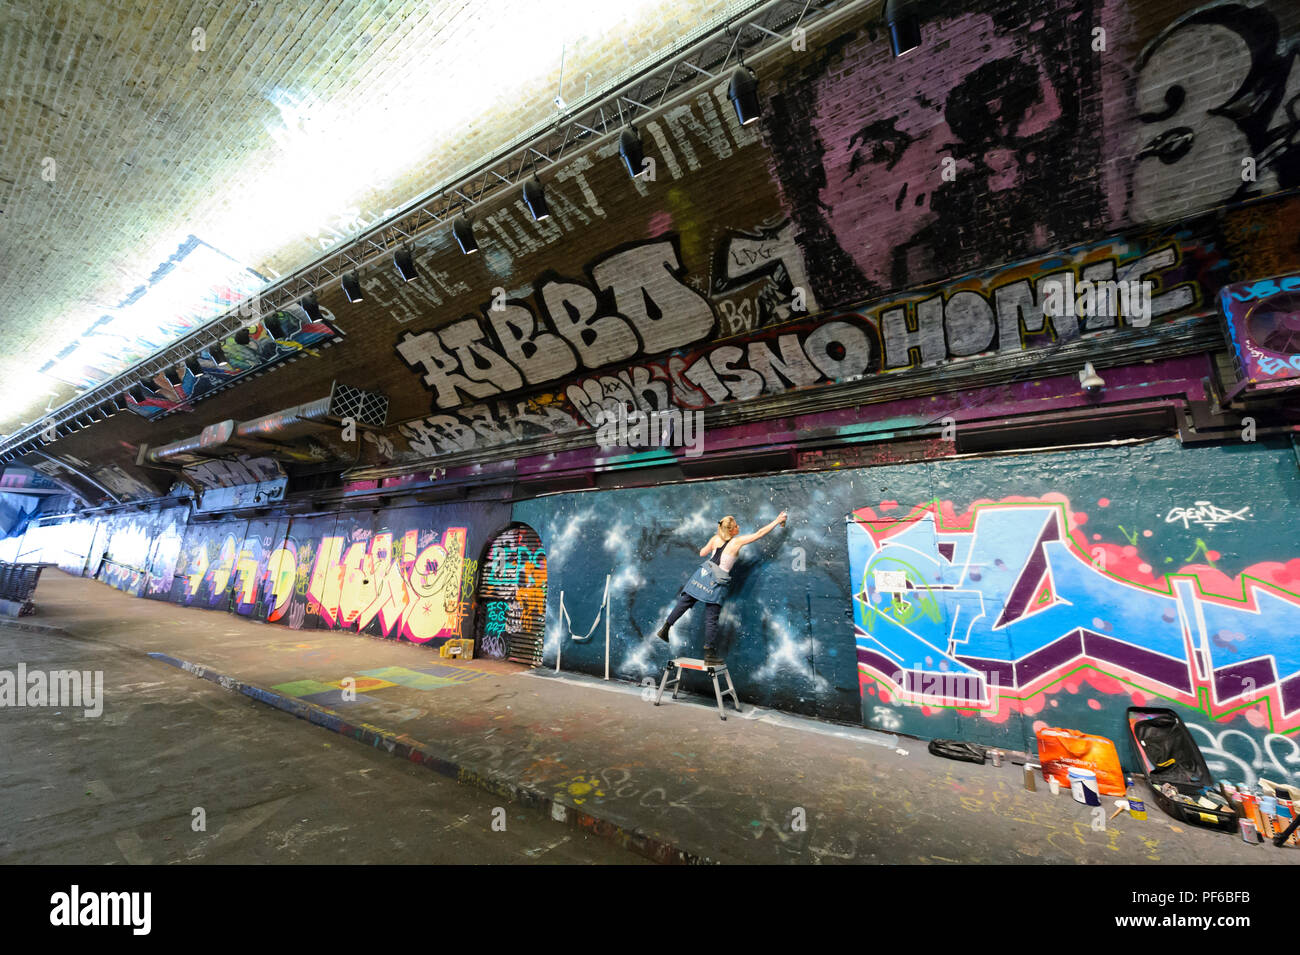 Un artista la spruzzatura di vernice sul muro in un tunnel in London, London, England, Regno Unito Foto Stock